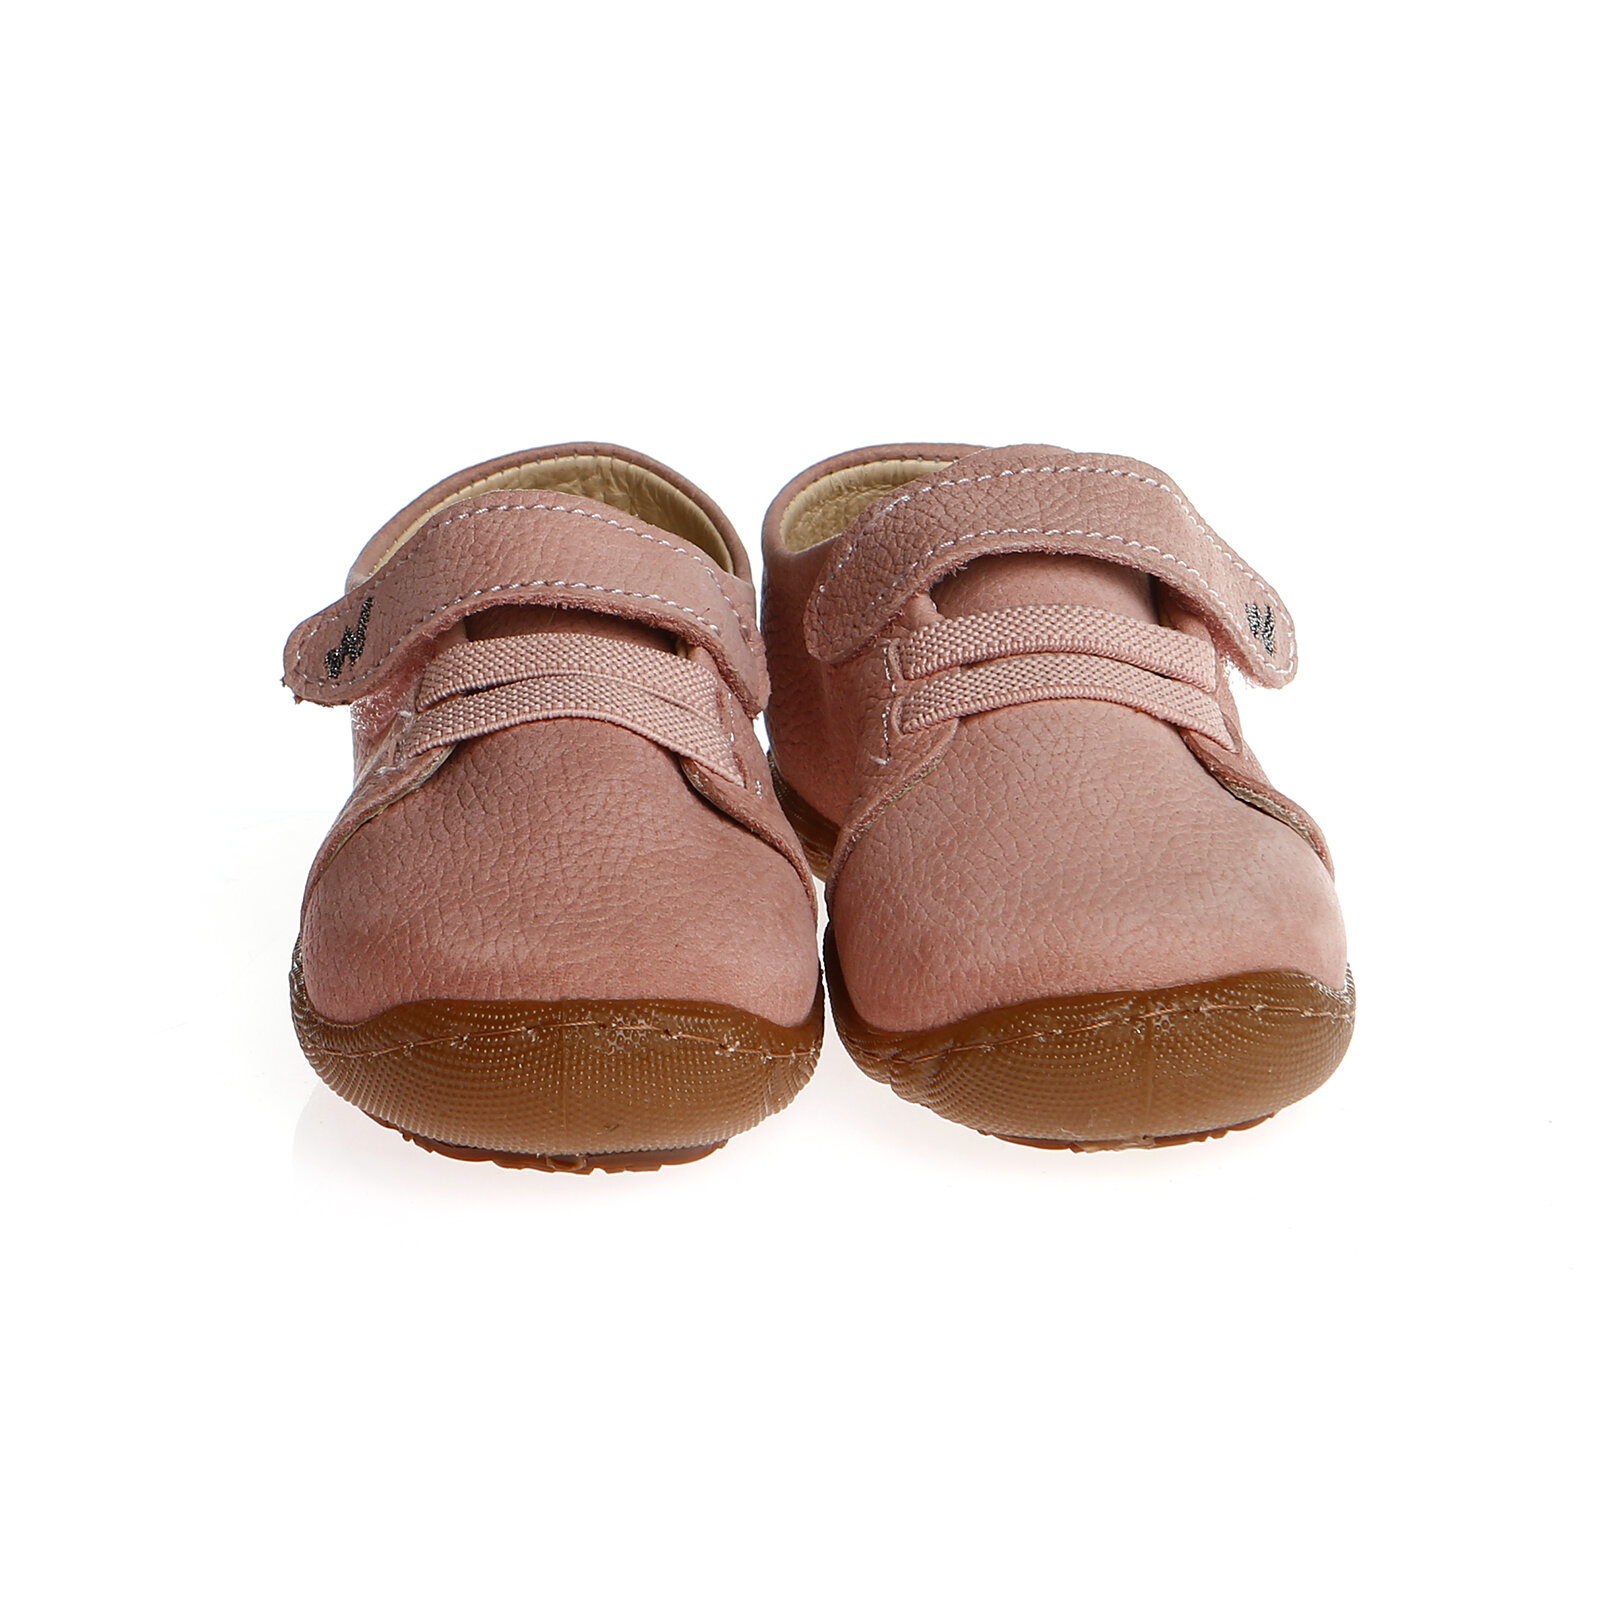 Doğal Yürüyüşü Destekleyen Bebek Ayakkabısı Unisex